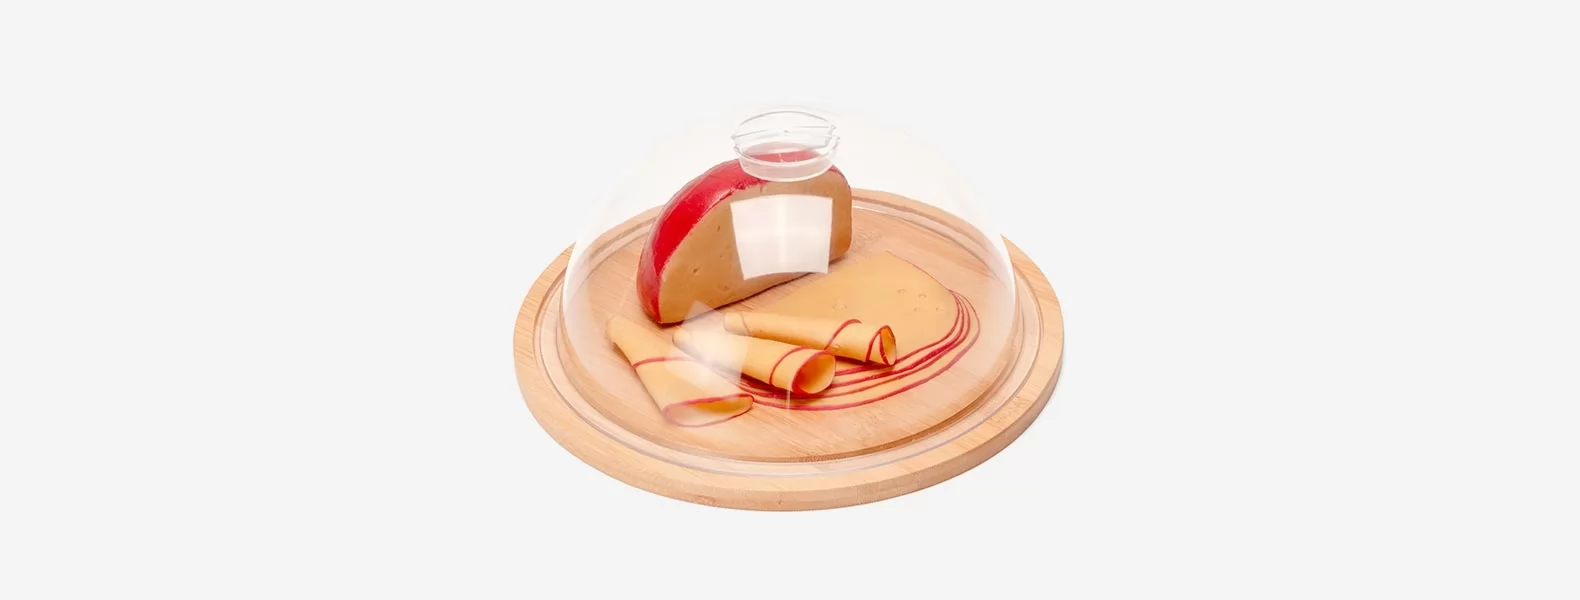 Porta-queijo Em Bambu E Poliestireno - 2 PÇs